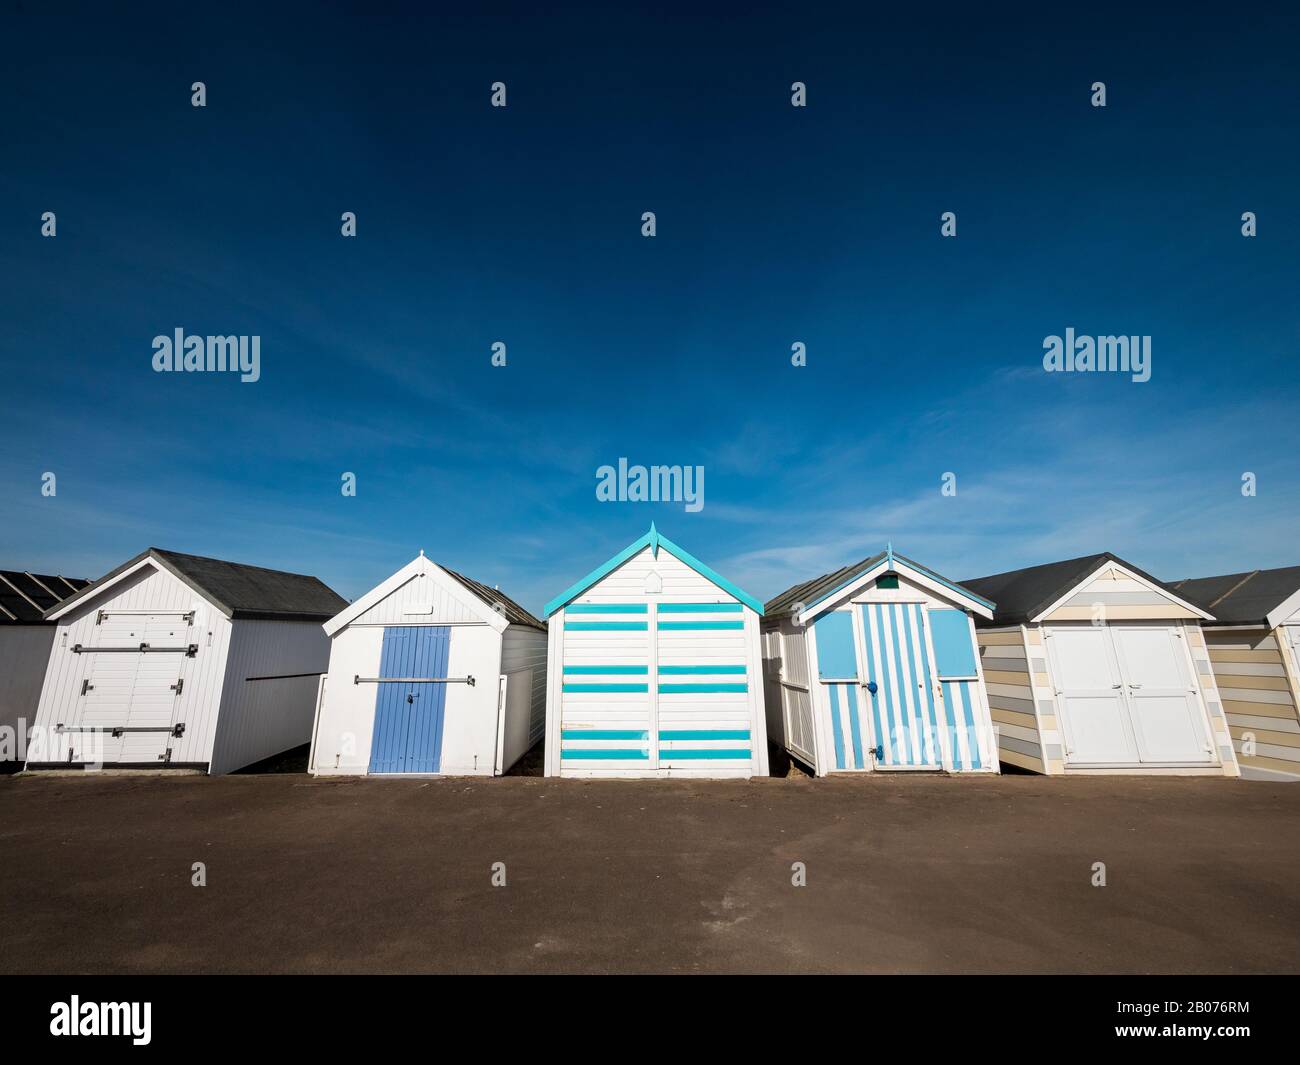 Tradizionale English Beach Huts. Una fila di capanne sulla spiaggia comunemente presenti nelle località balneari britanniche. Foto Stock